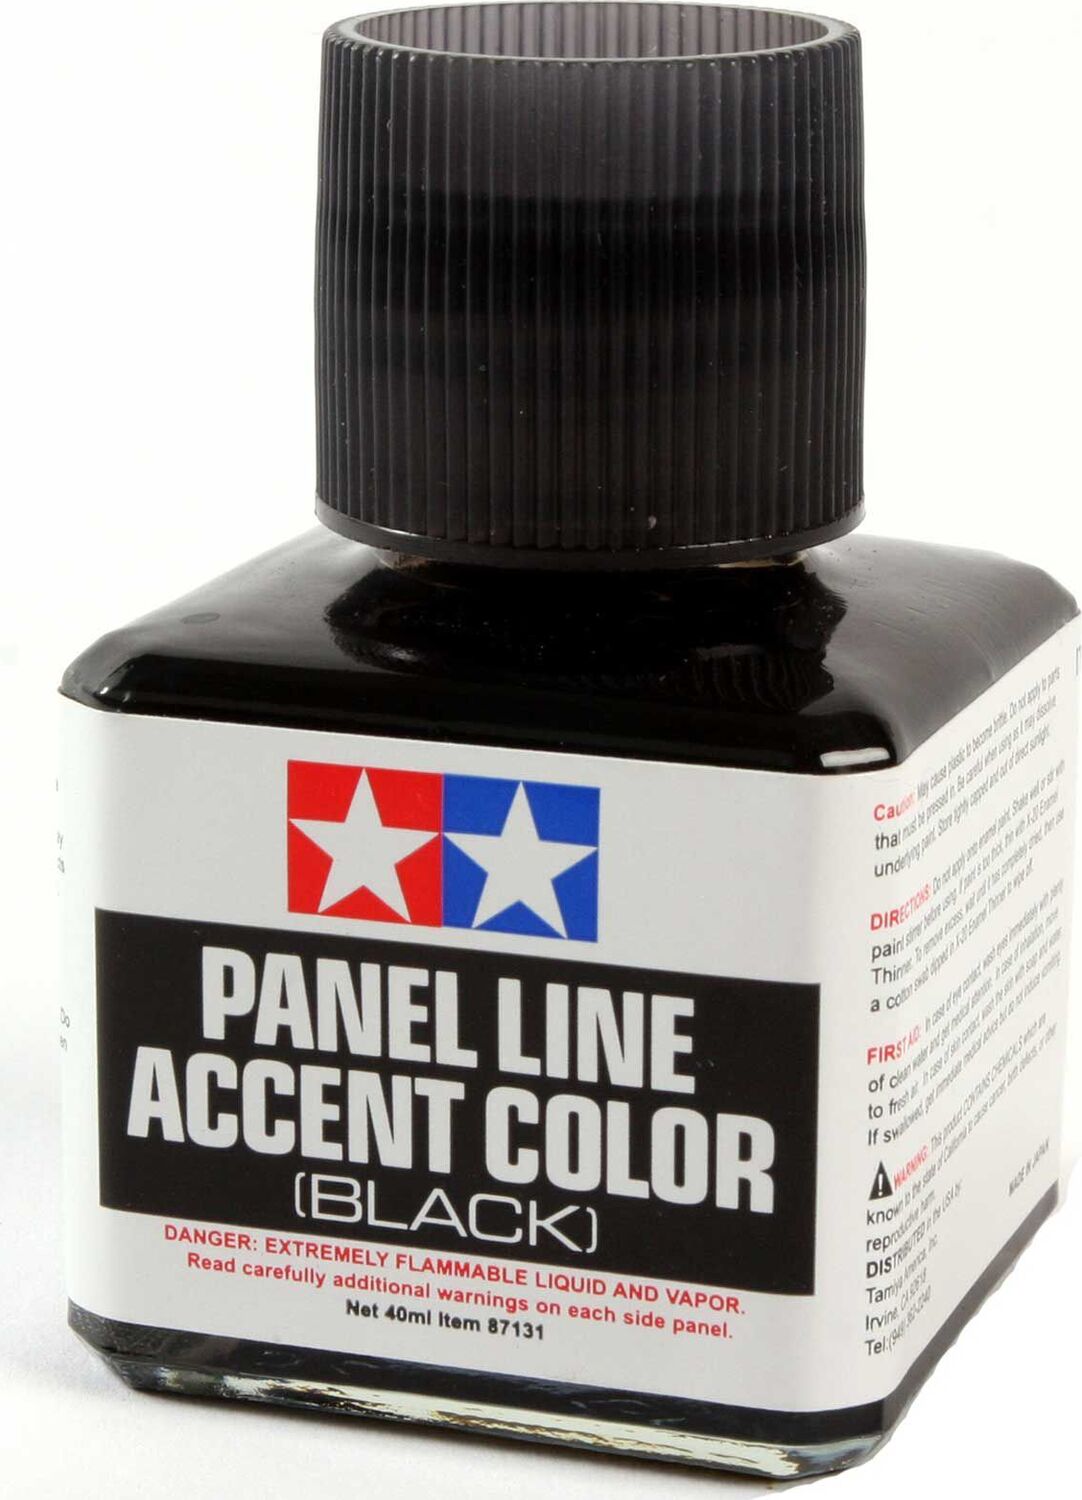 Panel Line Accent Color